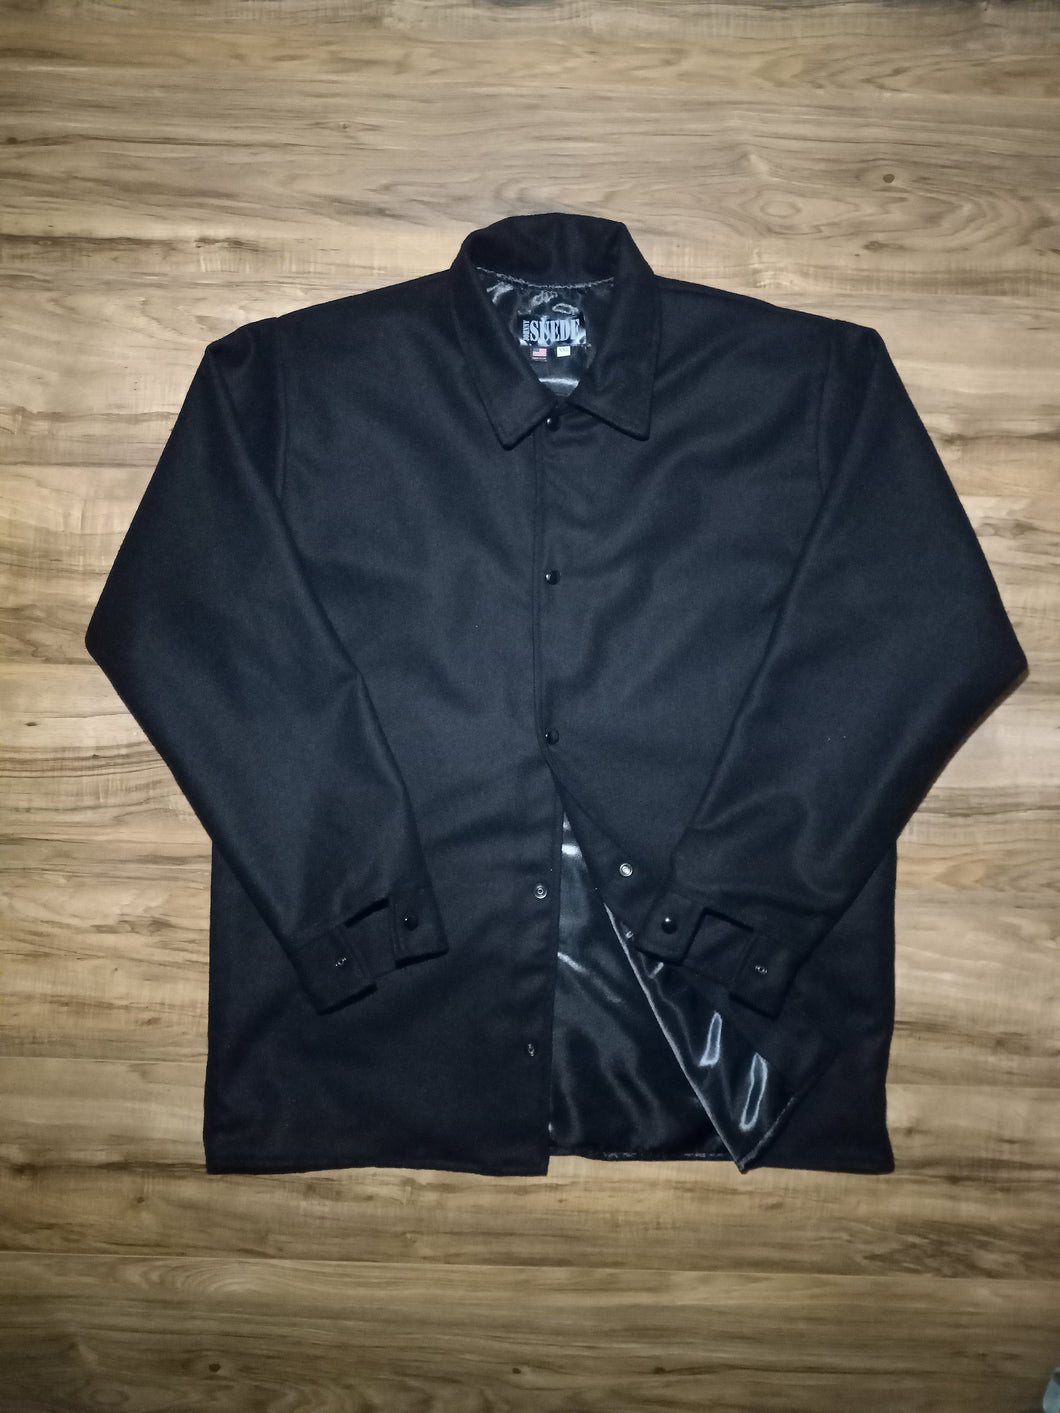 clicker -black on black reg collar